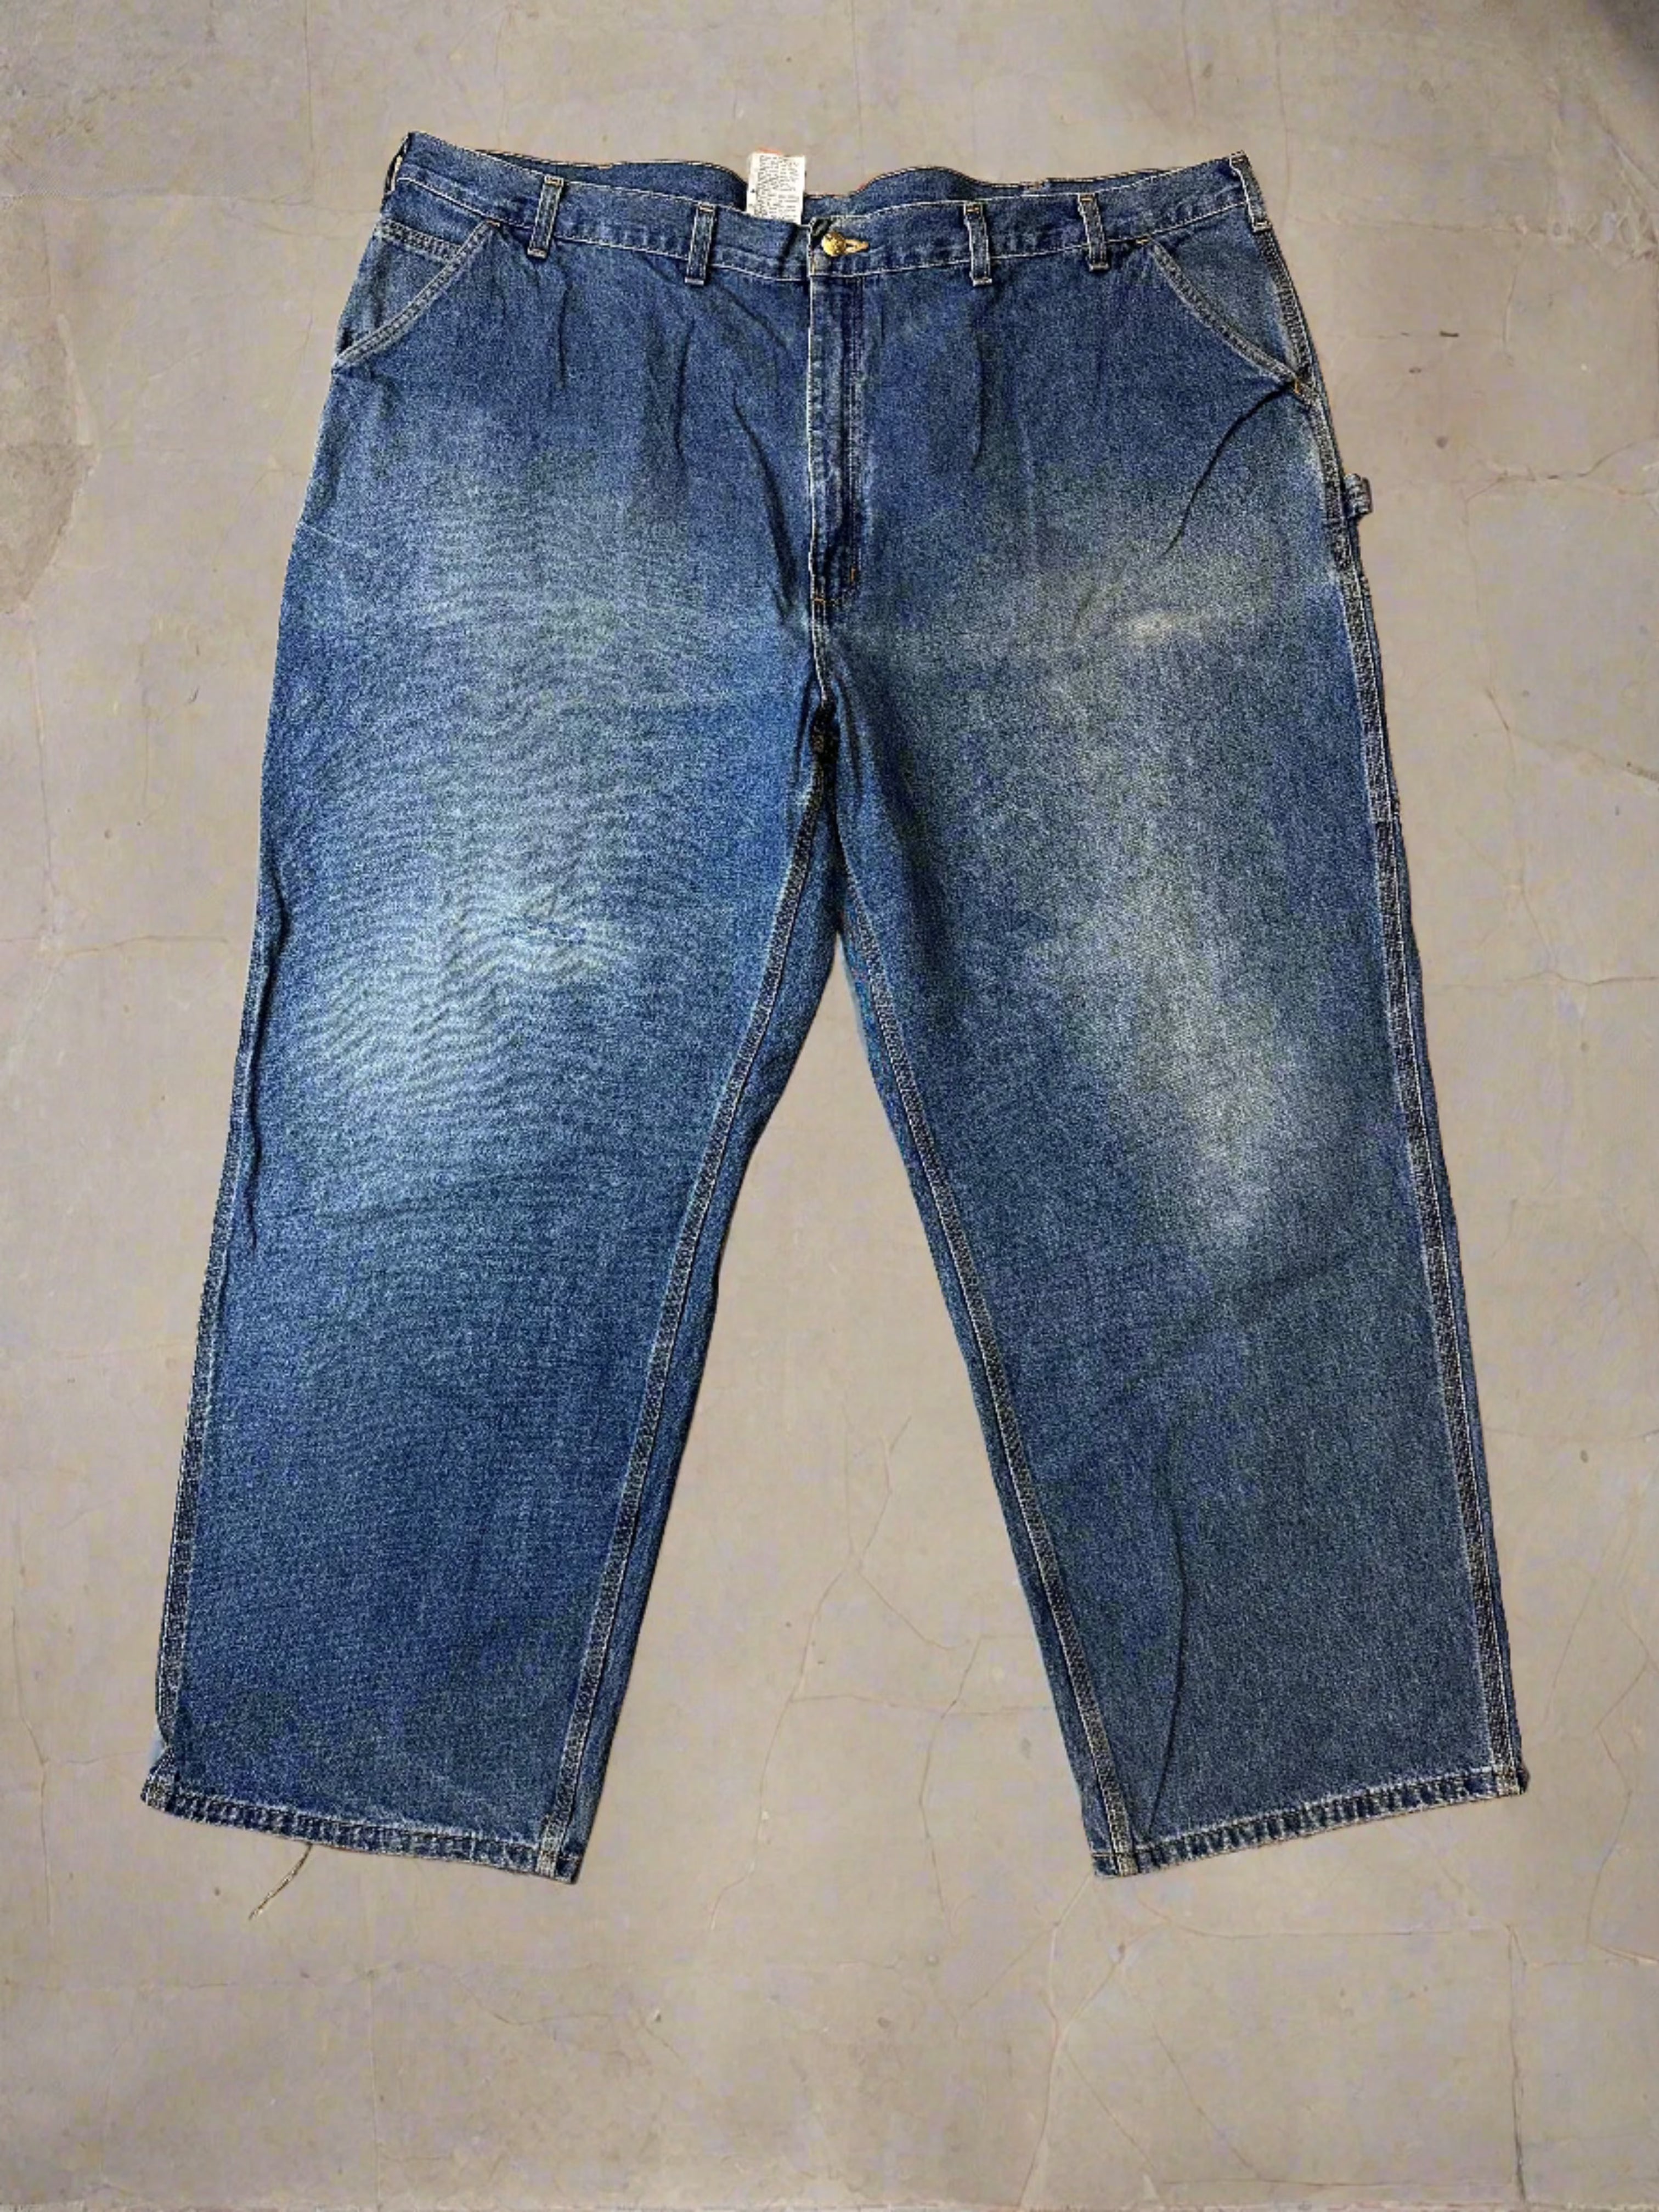 Vintage Carhartt Painter Pants - size 50x30